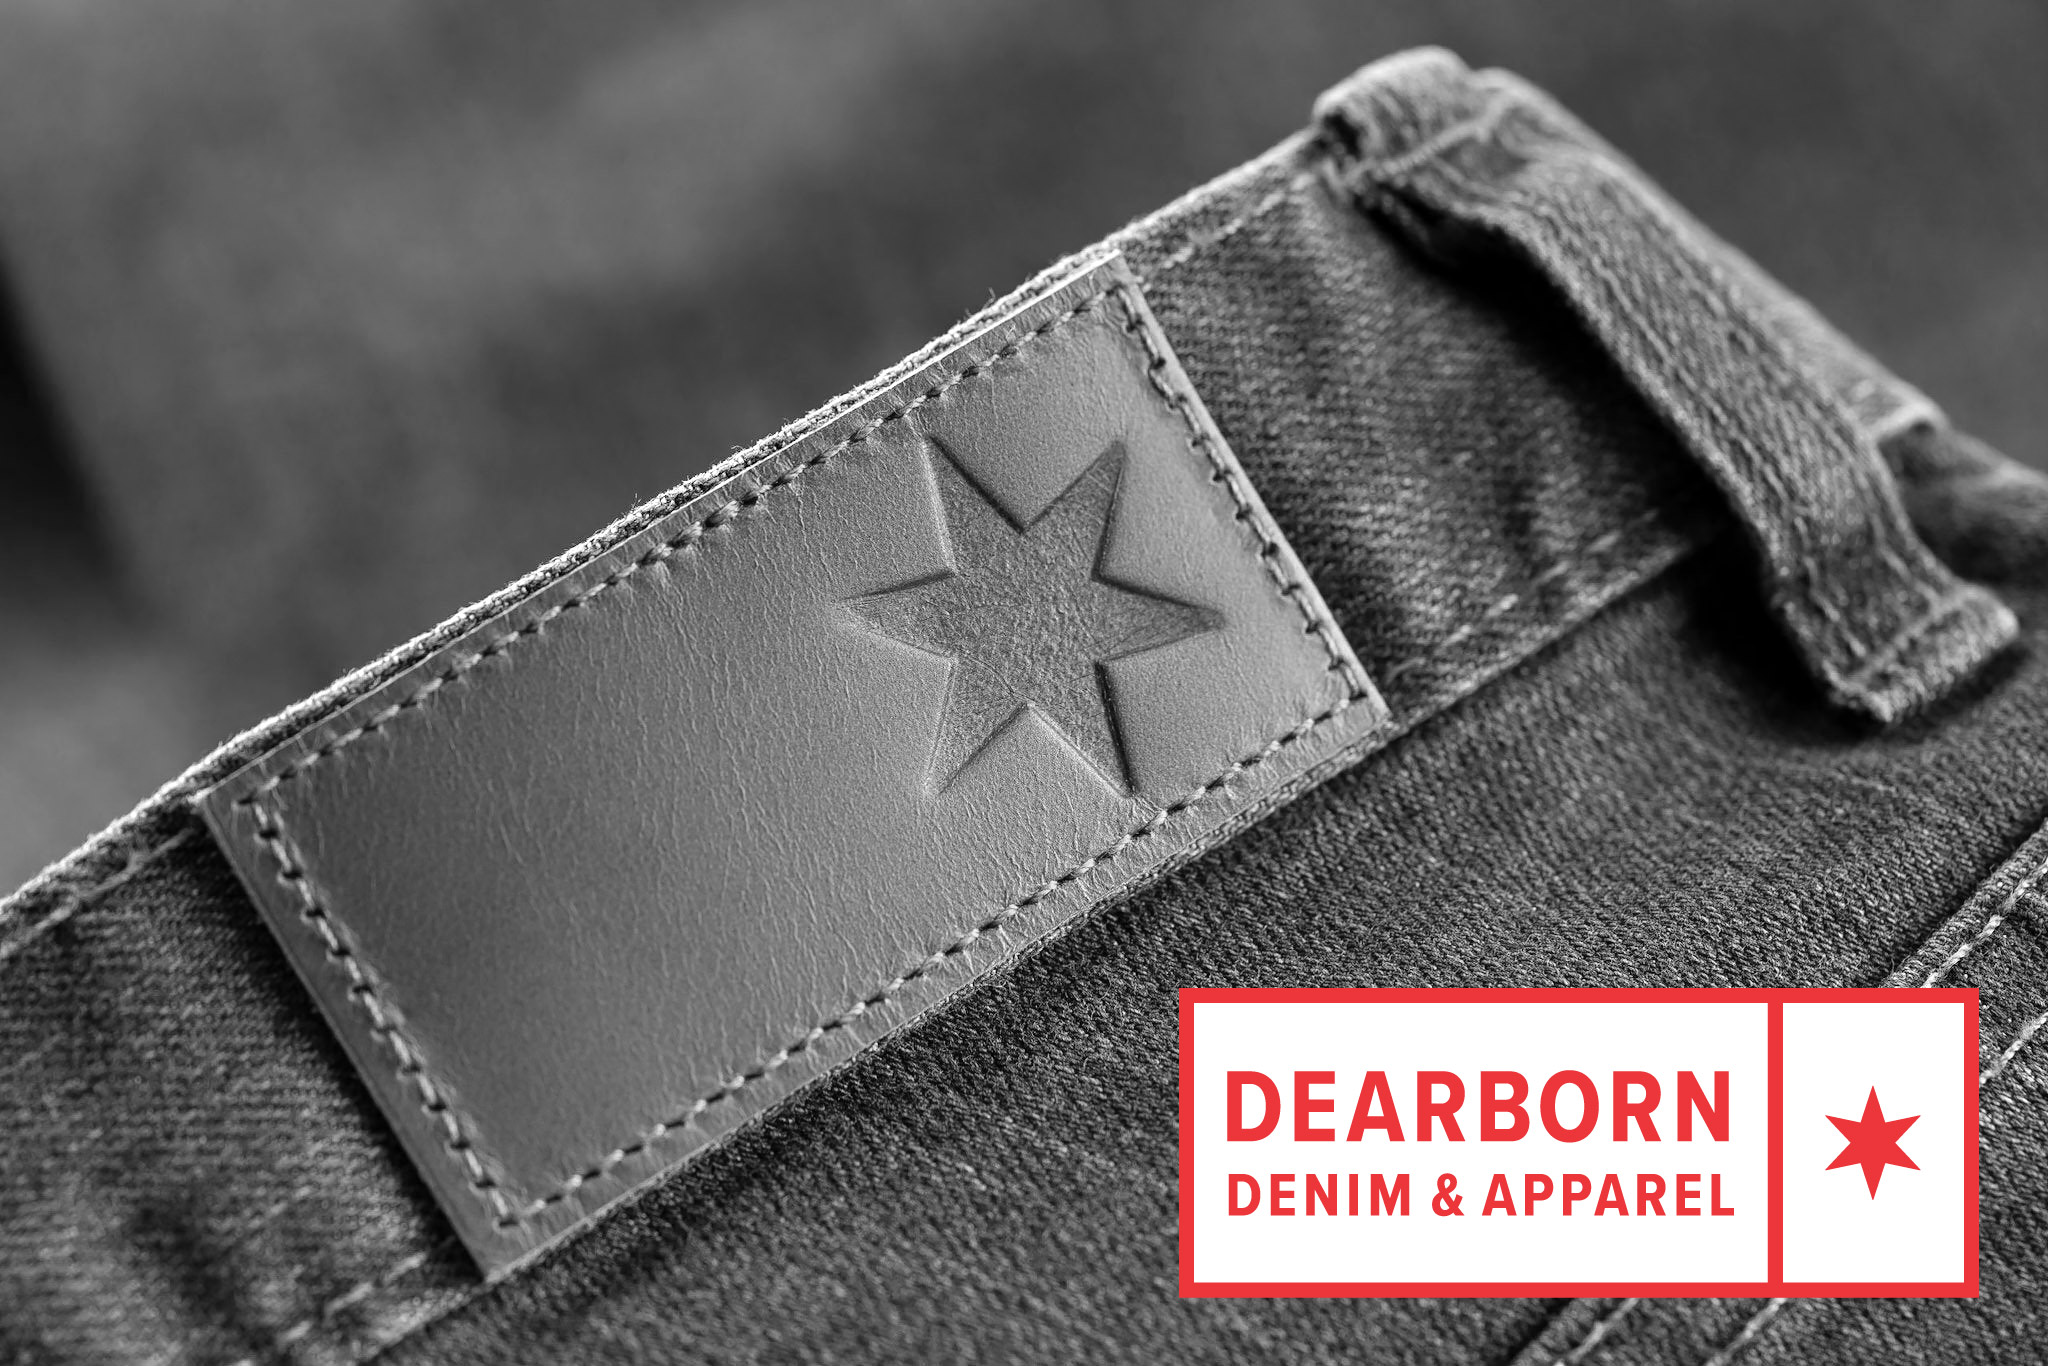 Featured client: Dearborn Denim